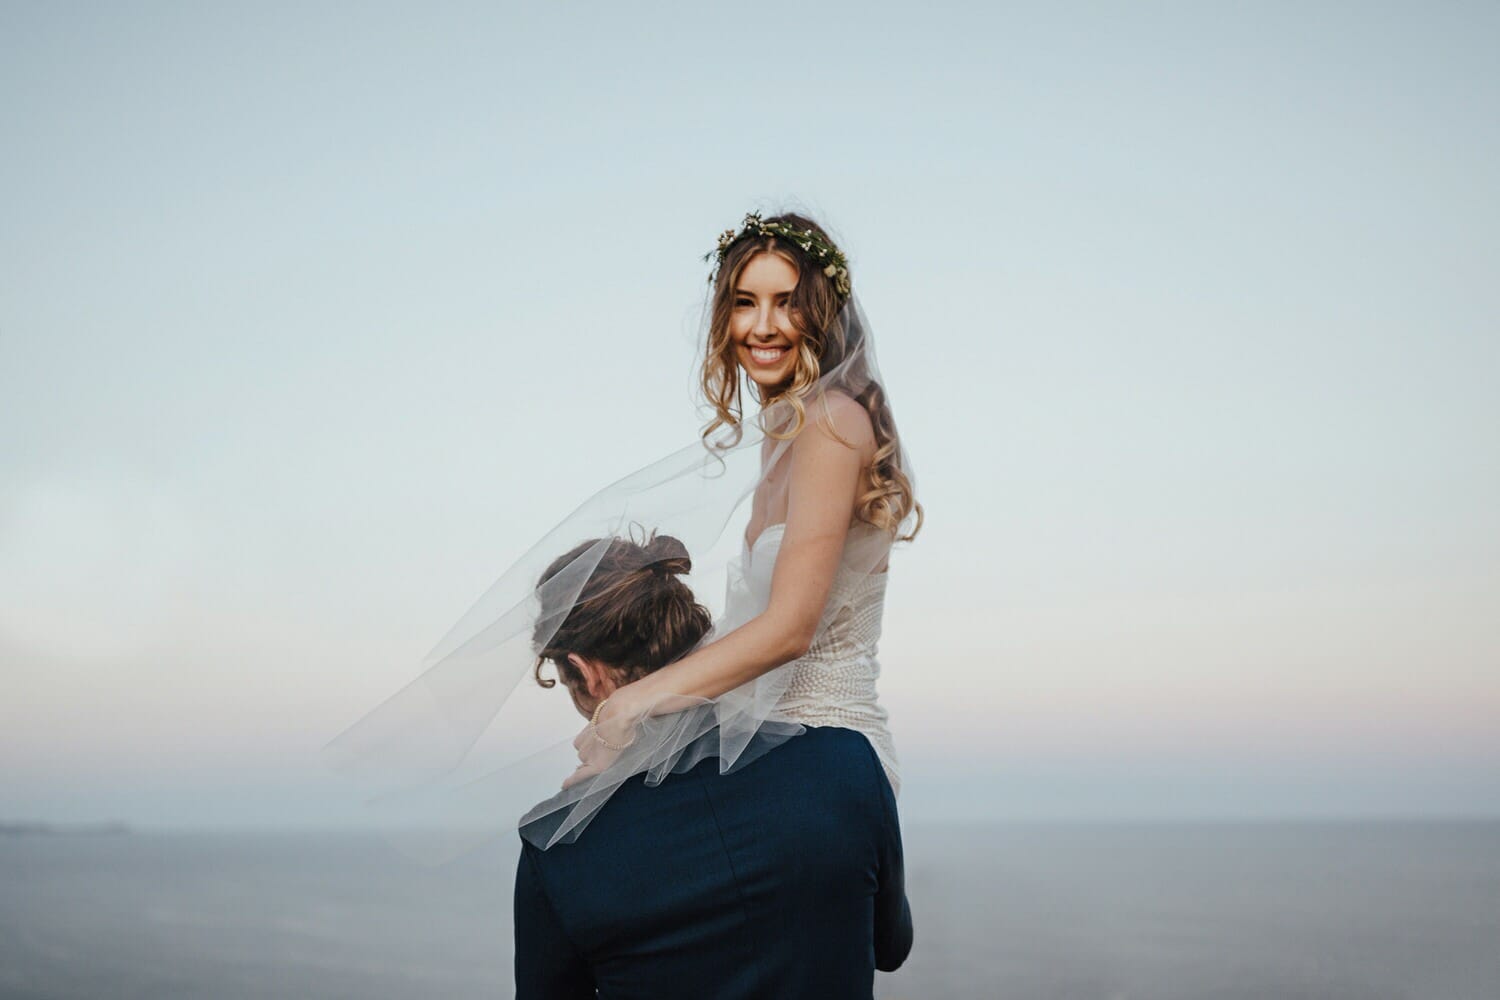 Cabo San Lucas Clifftop Wedding, Destination Wedding Photographer